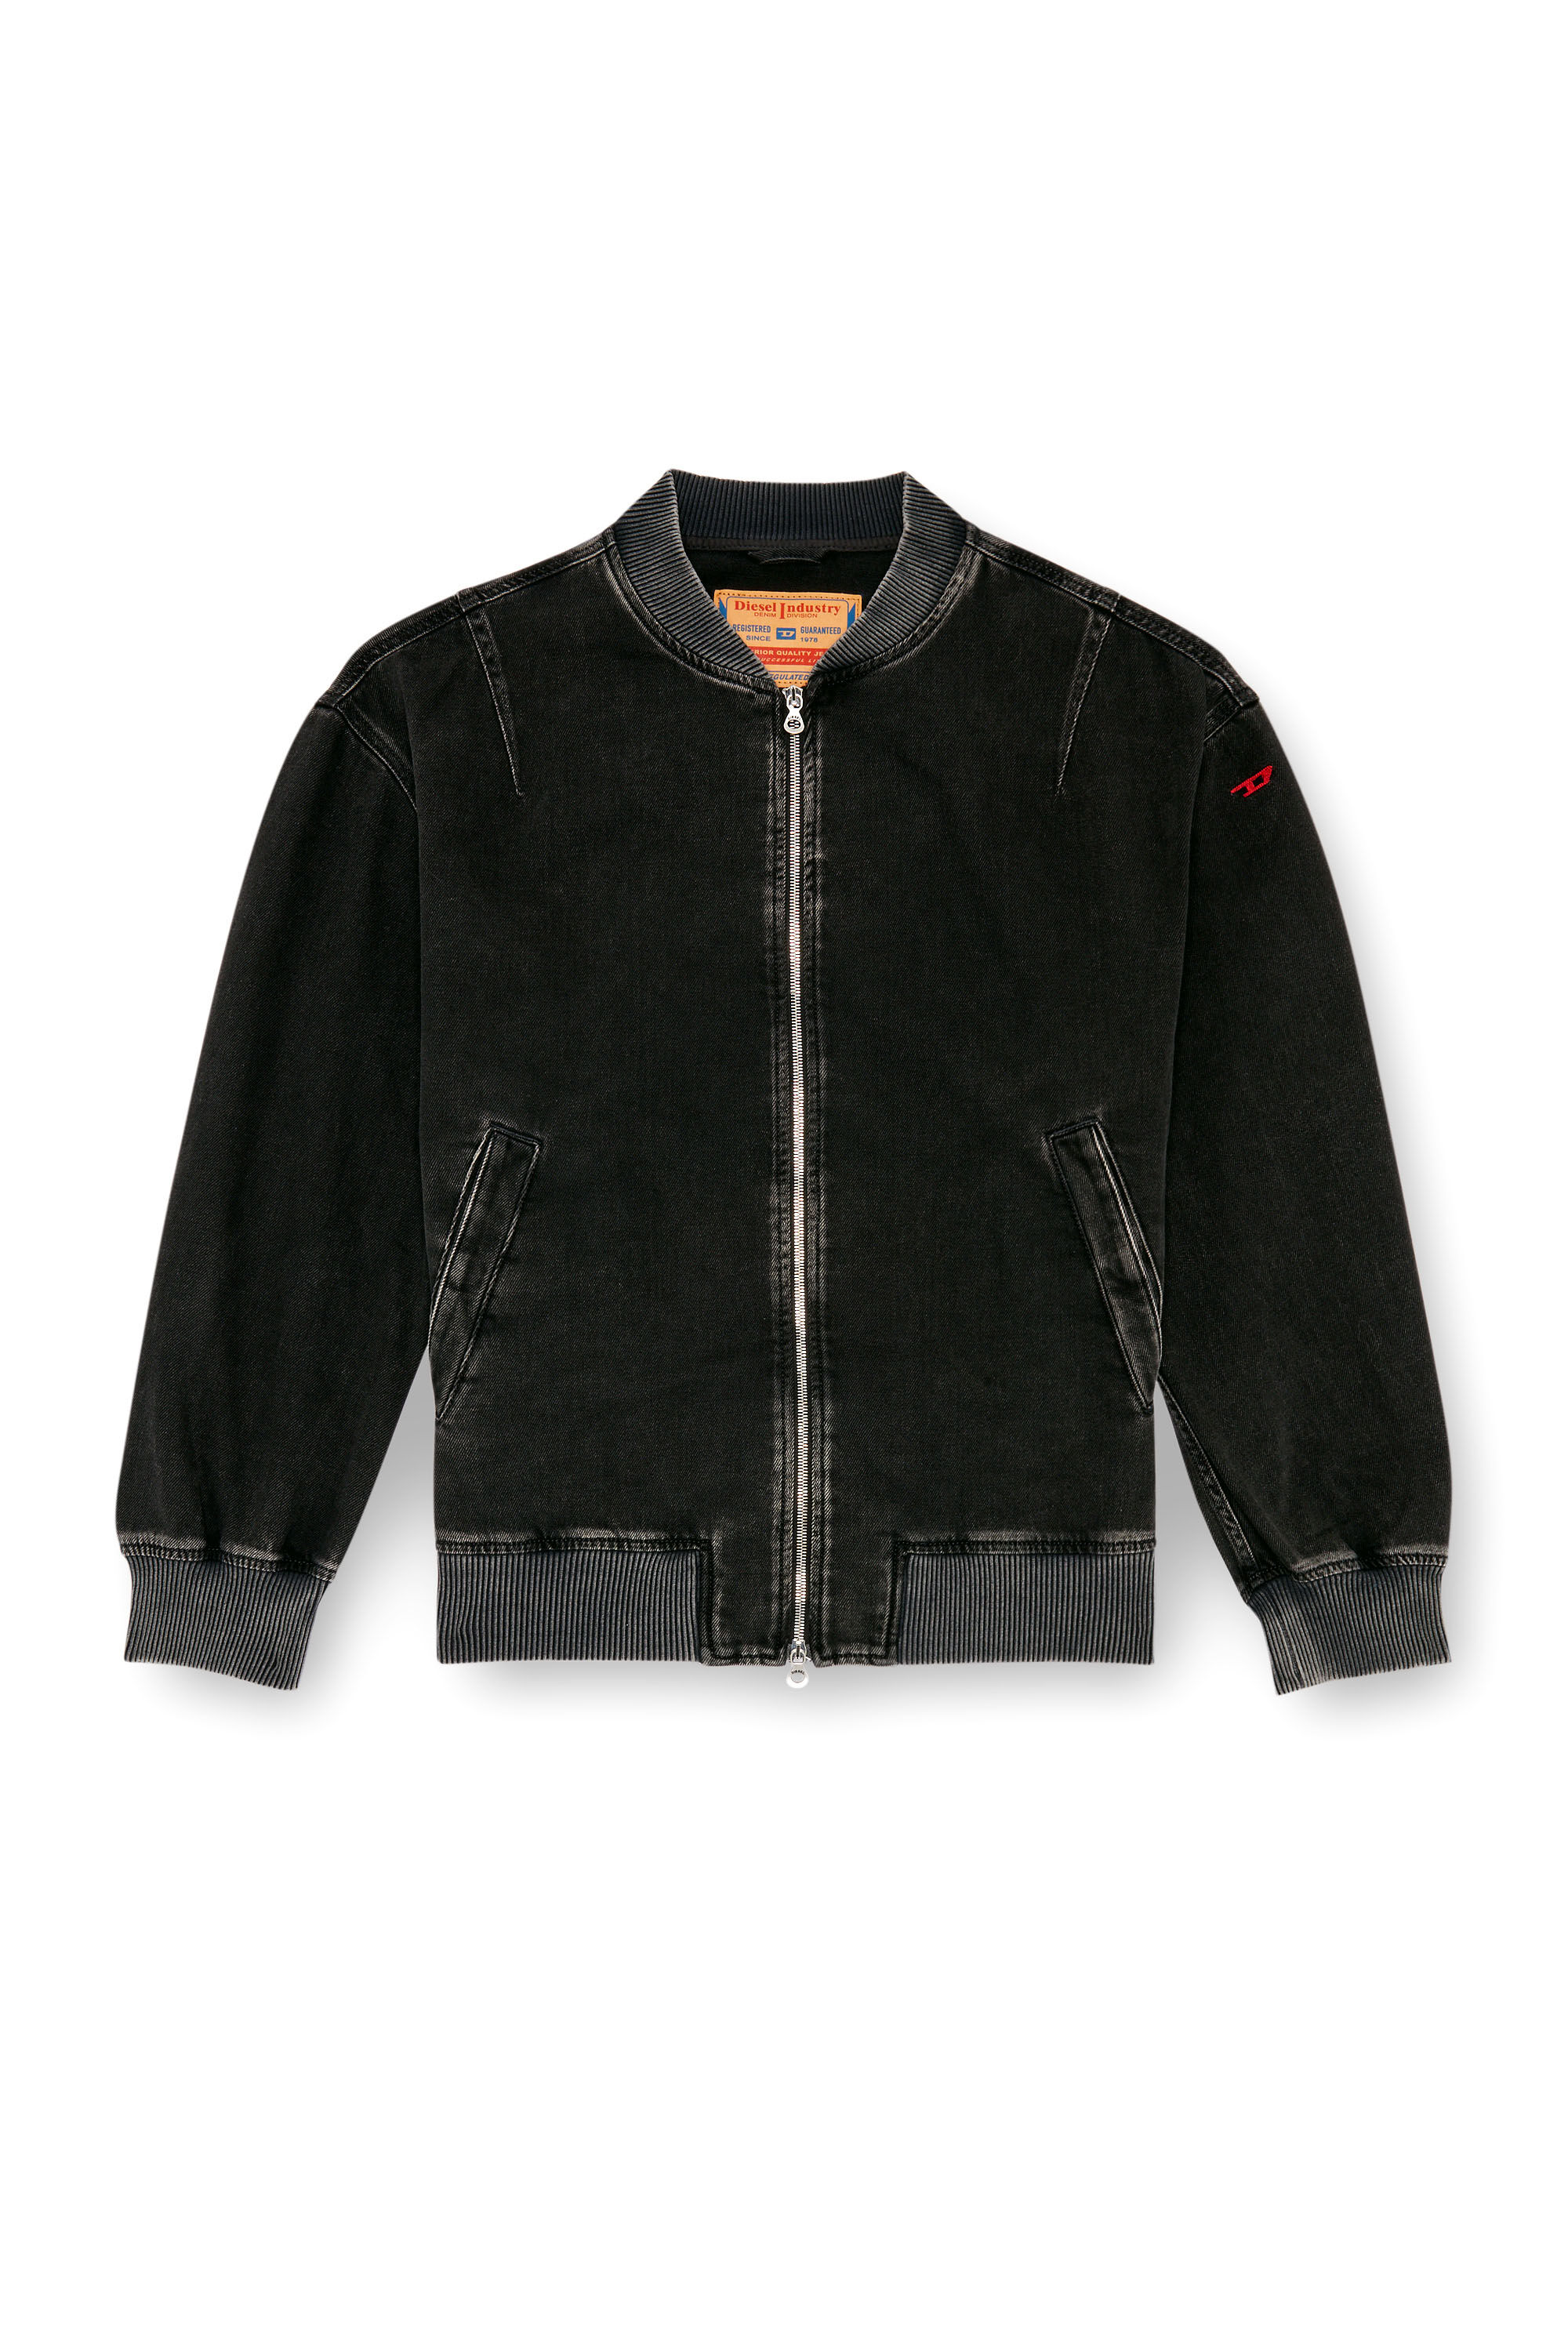 Diesel - D-VINZ, Man Bomber jacket in clean-wash denim in Black - Image 2